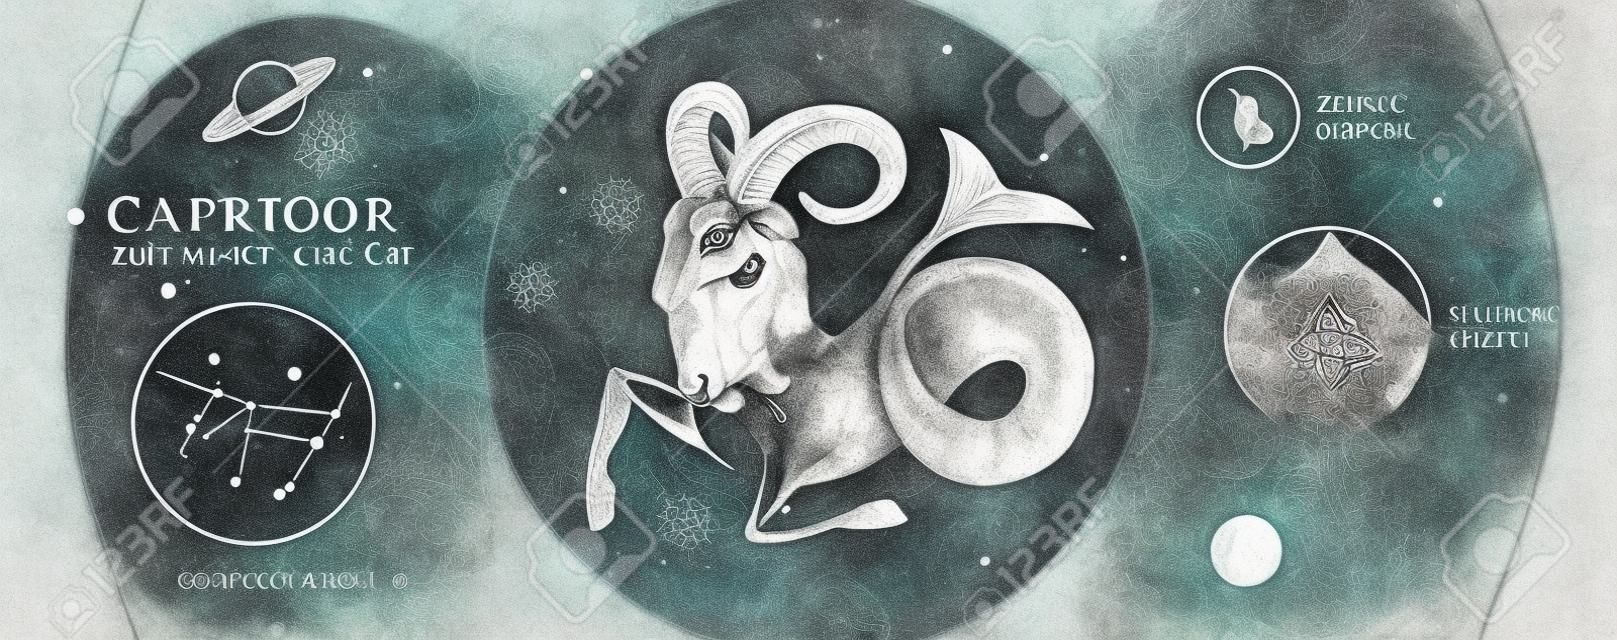 Cartão de bruxaria mágica moderna com astrologia signo do zodíaco Capricórnio. Mão realista desenho carneiro ou cabeça de mouflon. Característica do zodíaco